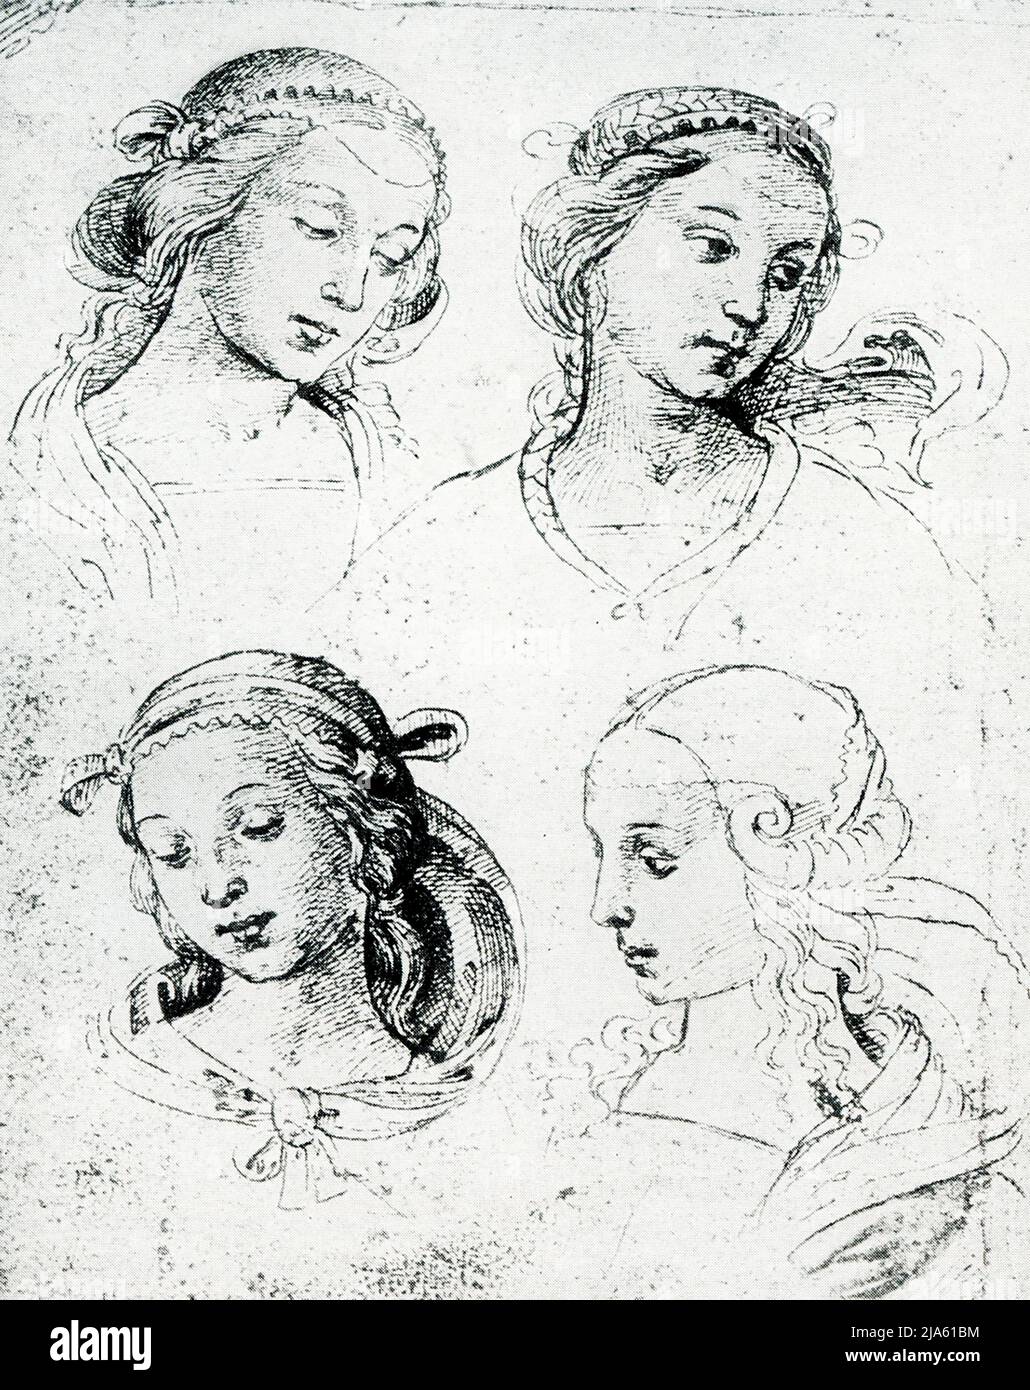 Ces dessins de Raphaël (1483-1520) ont été réalisés en sépia avec un stylo. Les lignes des cheveux et de la drapery sont fluides et libres, les ombres sombres suggéré par un toucher plus lourd ou des lignes croisées. Les yeux sont grands, soigneusement placés et soigneusement dessinés. Les deux têtes supérieures sont probablement faites avec un crayon marron. Le coin inférieur droit est un stylo qui dessine un caractère individuel robuste. Raffaello Sanzio da Urbino était un peintre et architecte italien de la haute Renaissance. Son œuvre est admirée pour sa clarté de forme, sa facilité de composition et la réalisation visuelle de l'idéal néoplatonique de grandeur humaine. Banque D'Images